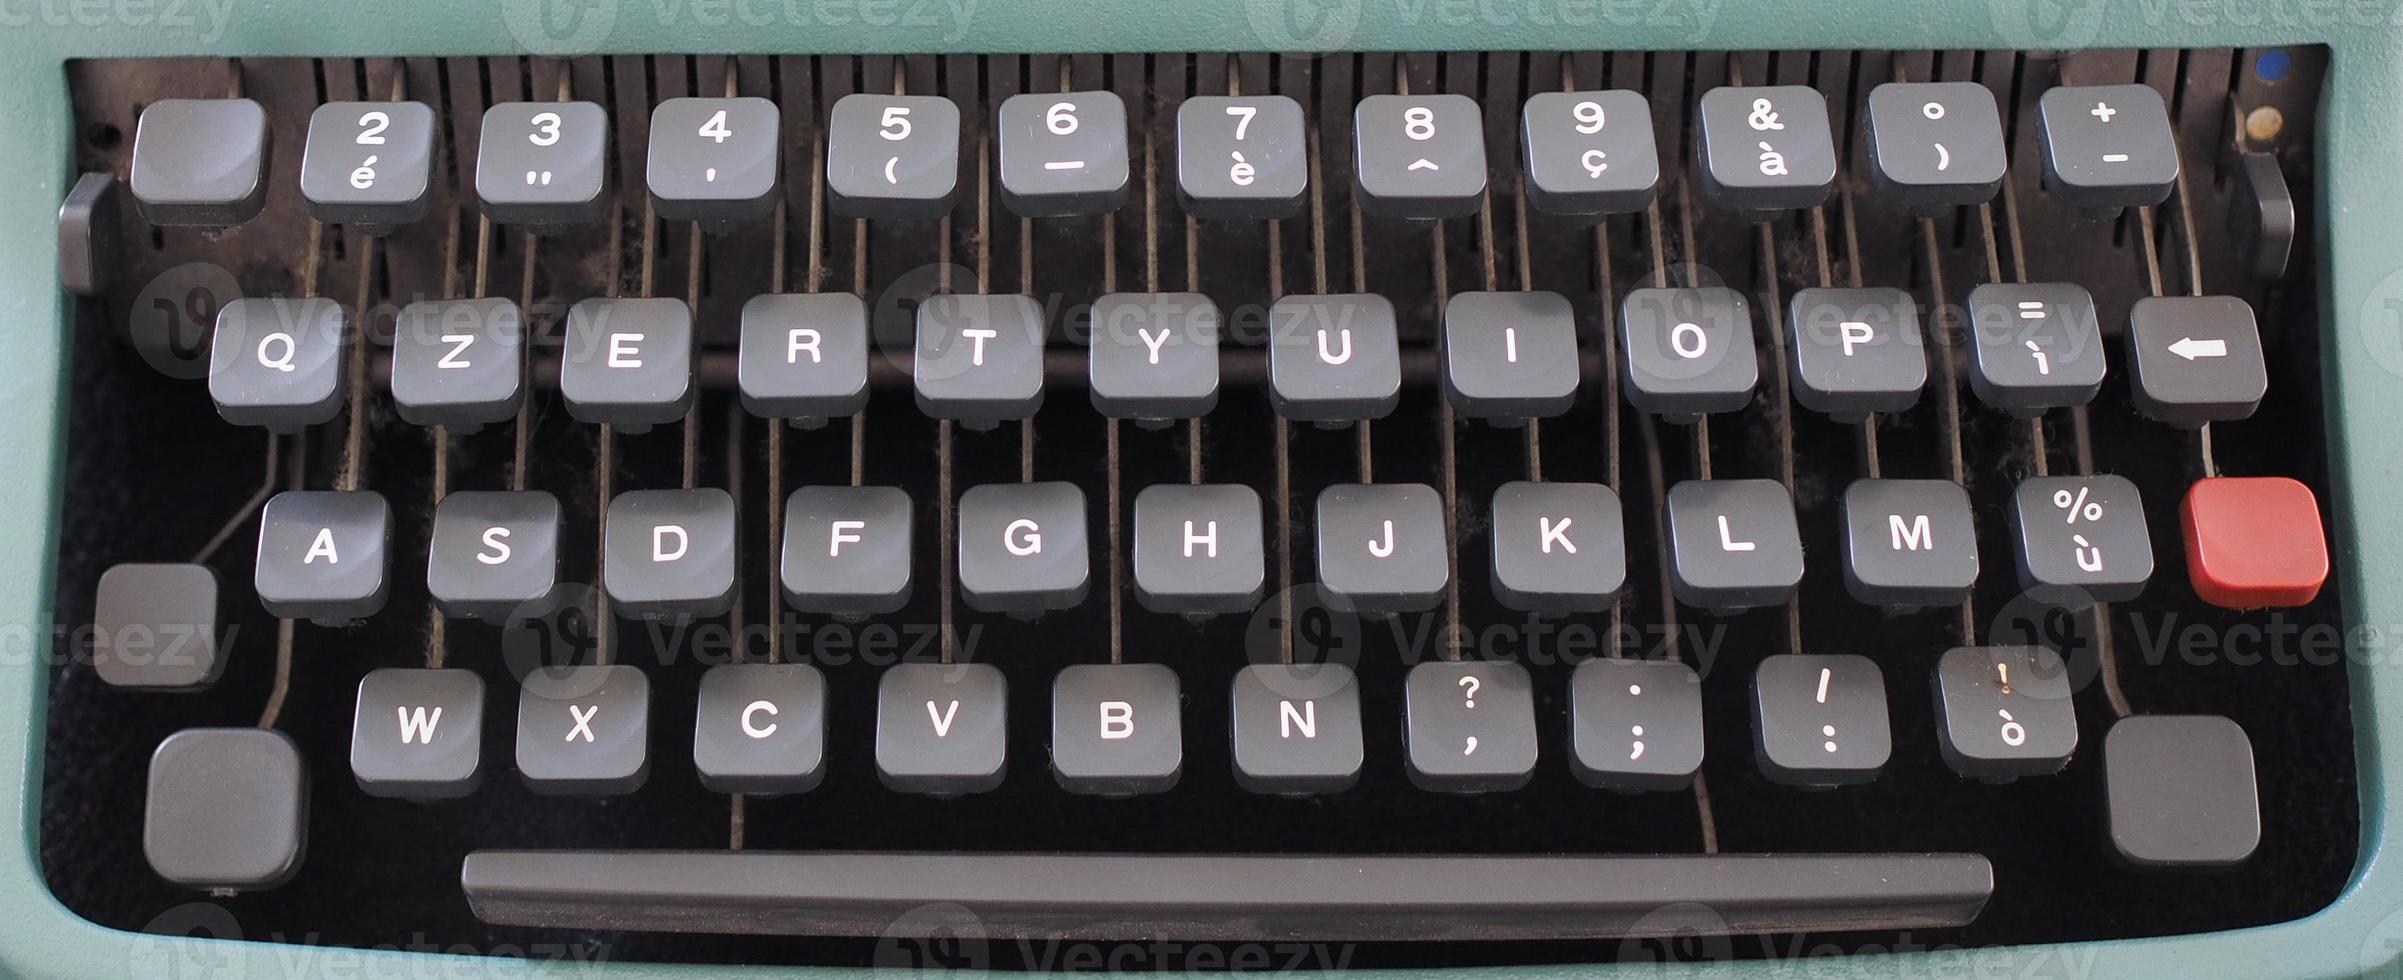 teclado de máquina de escribir vintage 3926270 Foto de stock en Vecteezy